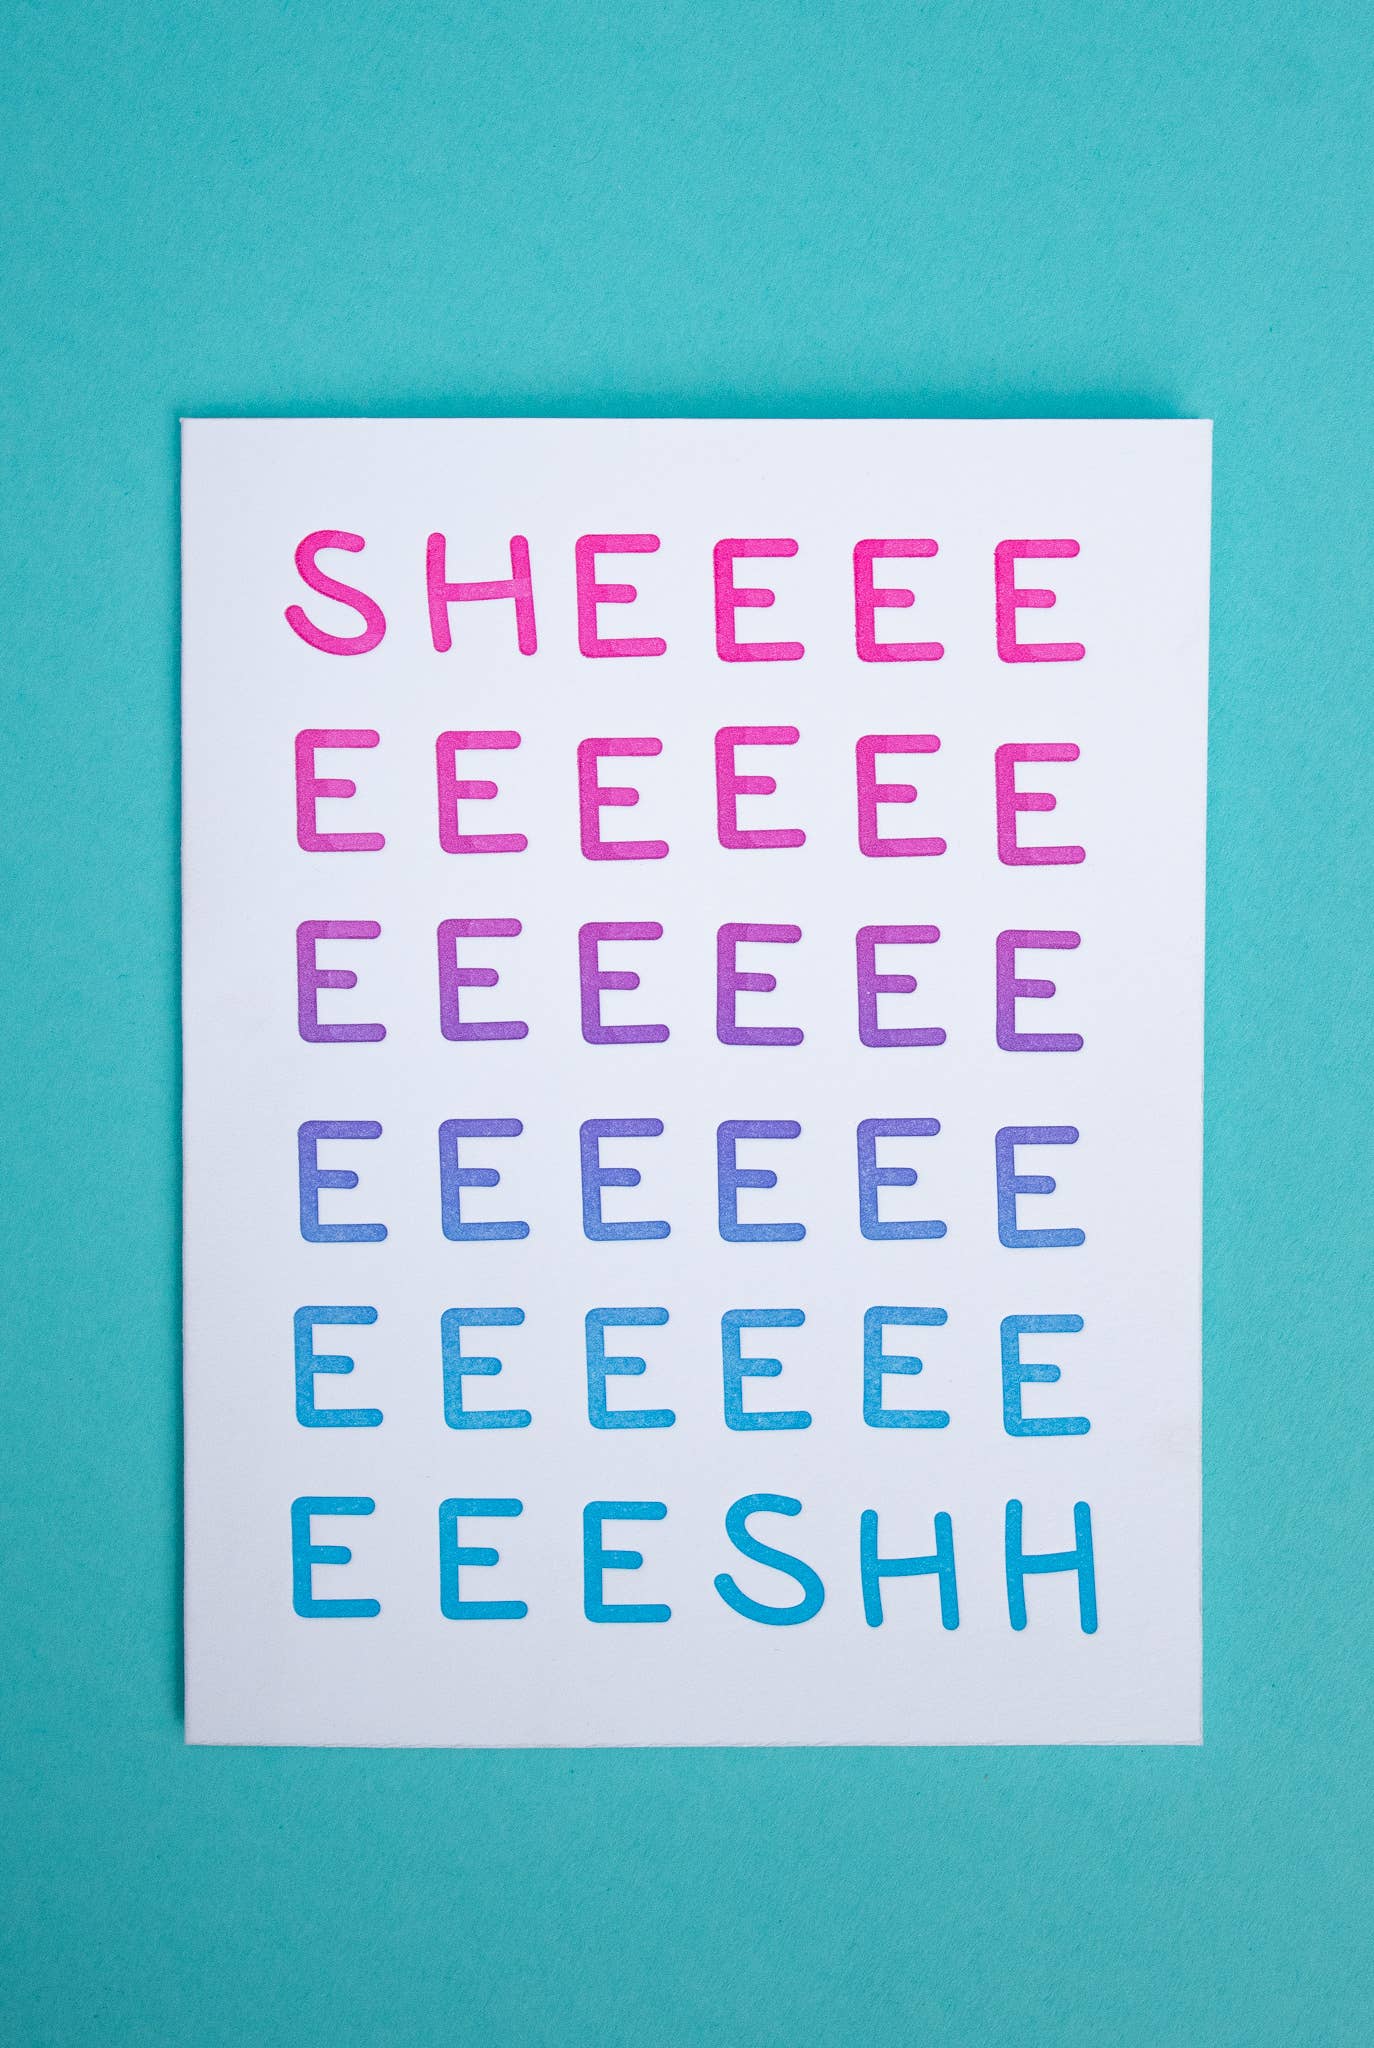 Letterpress Greeting Card; Sheeeeesh By M.C. Pressure